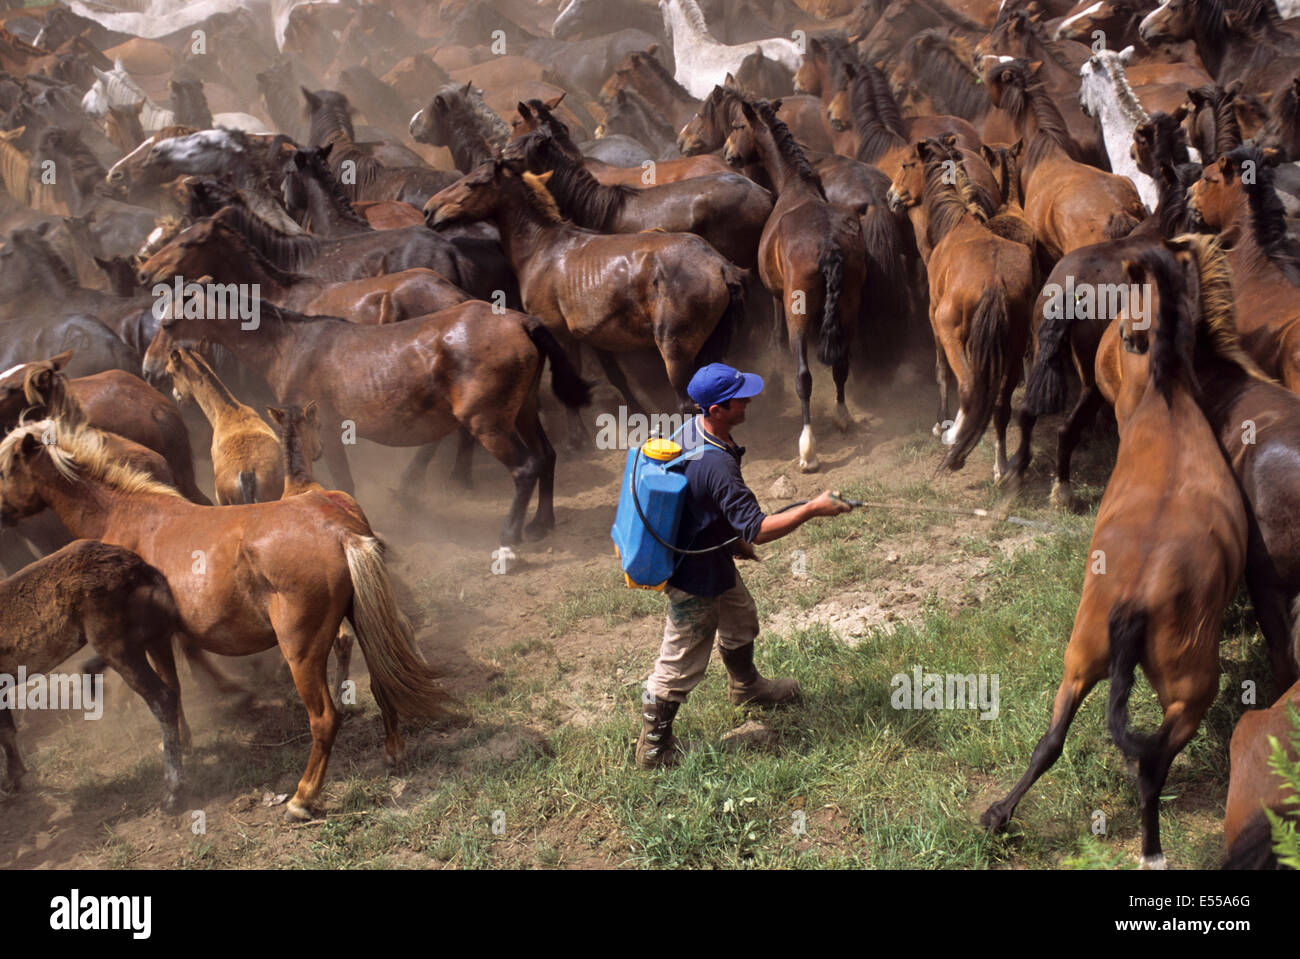 Un homme disinfests les chevaux sauvages au cours de la 'A RAPA DAS BESTAS' dans Sabucedo, Galice, Espagne Banque D'Images